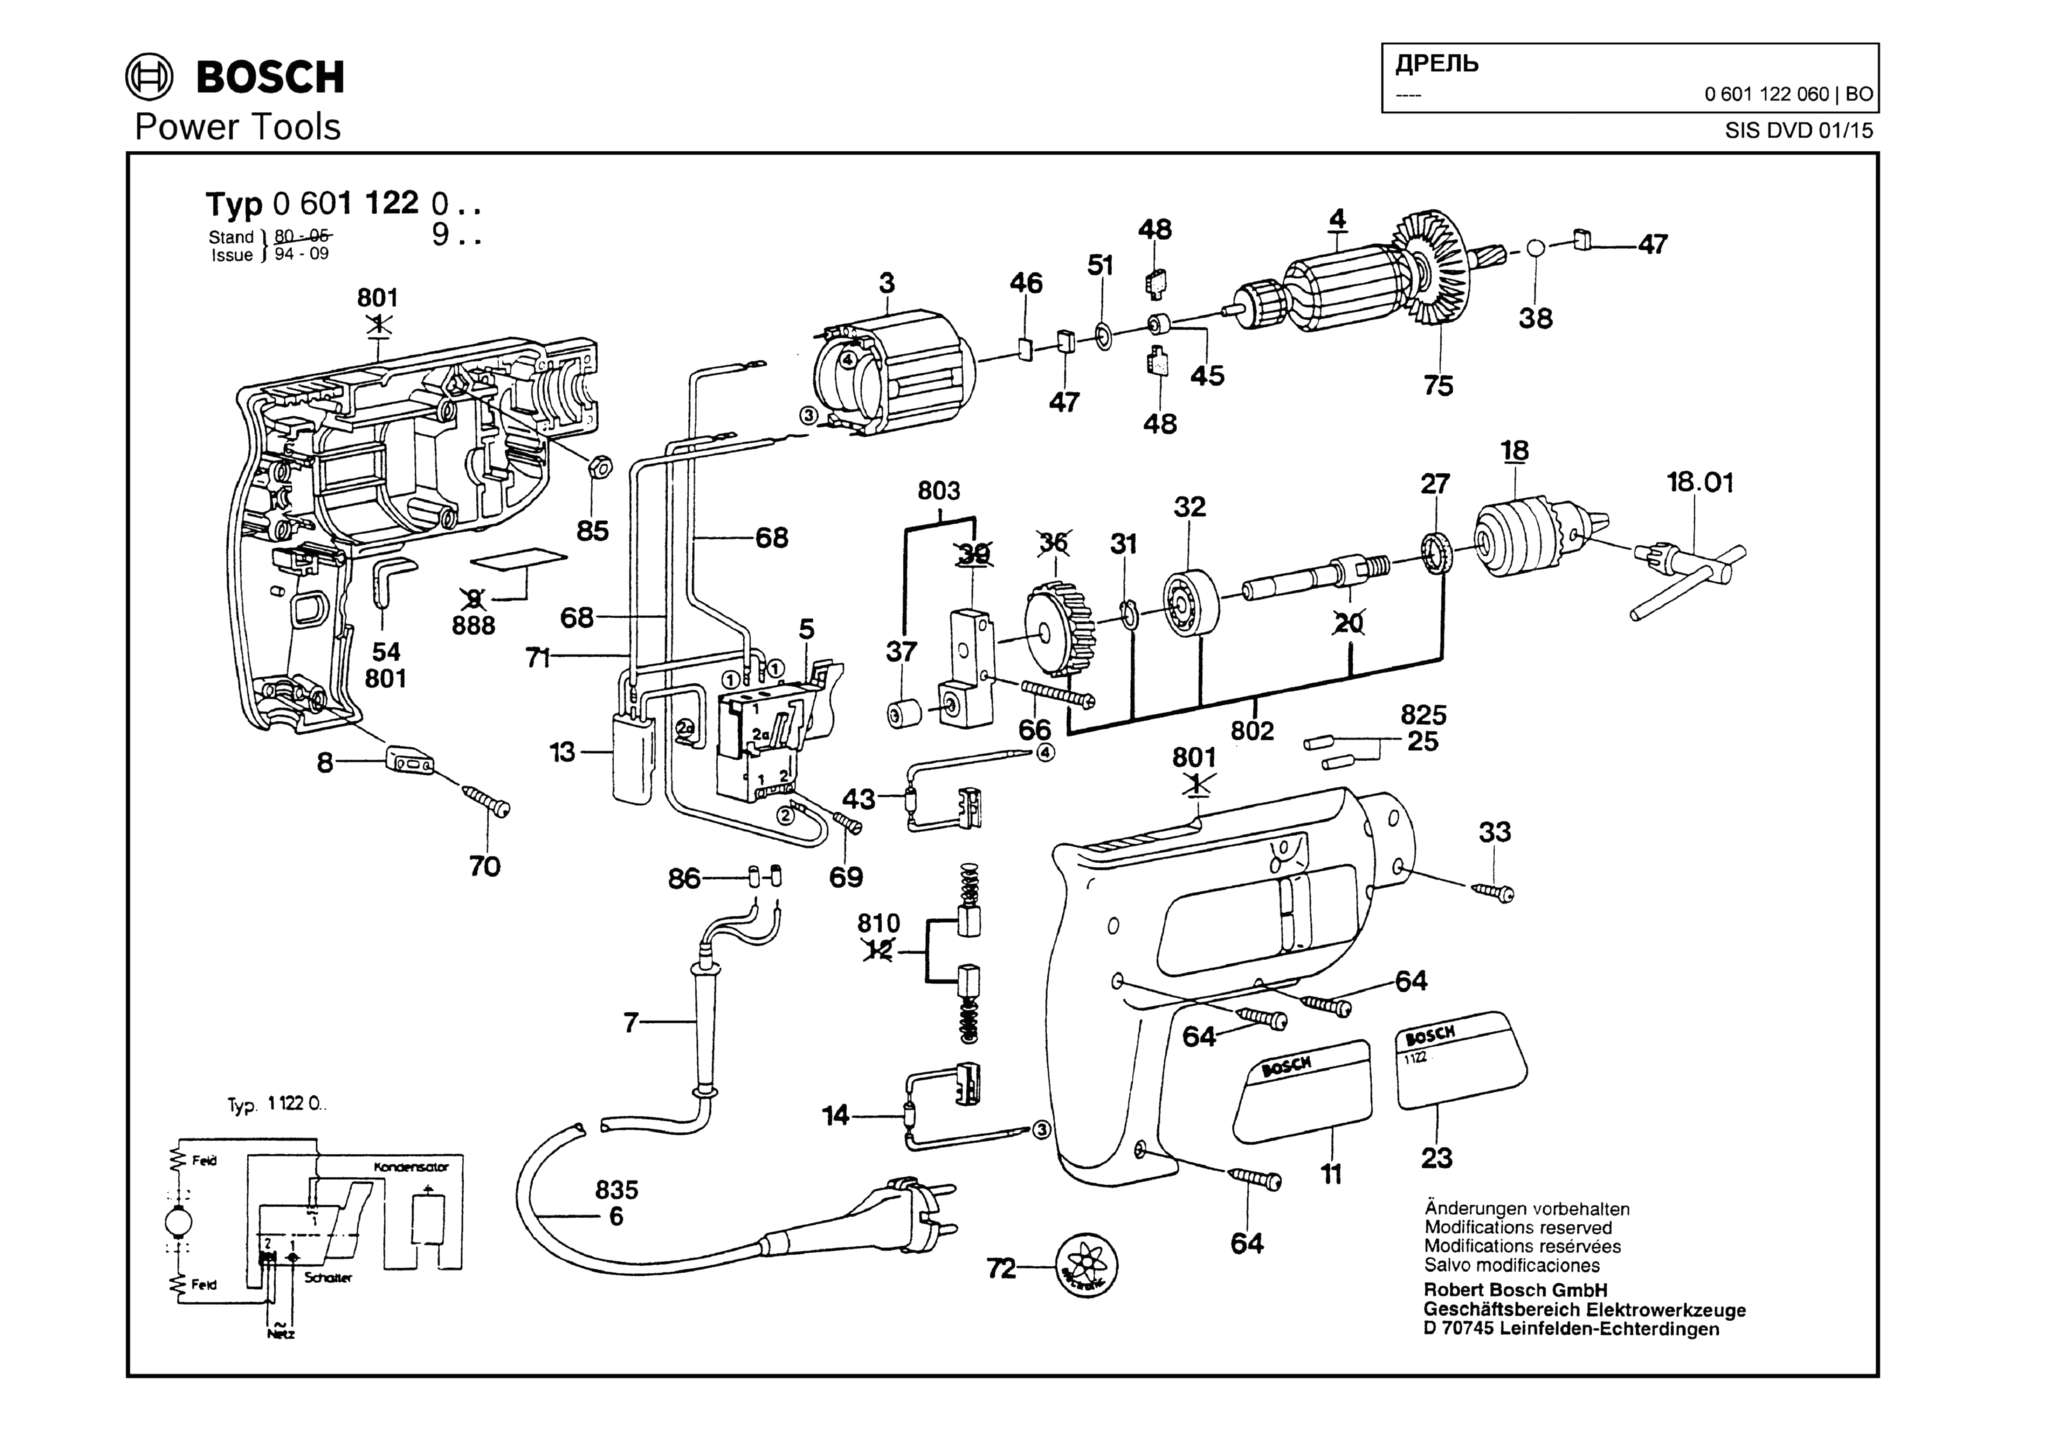 Запчасти, схема и деталировка Bosch (ТИП 0601122060)